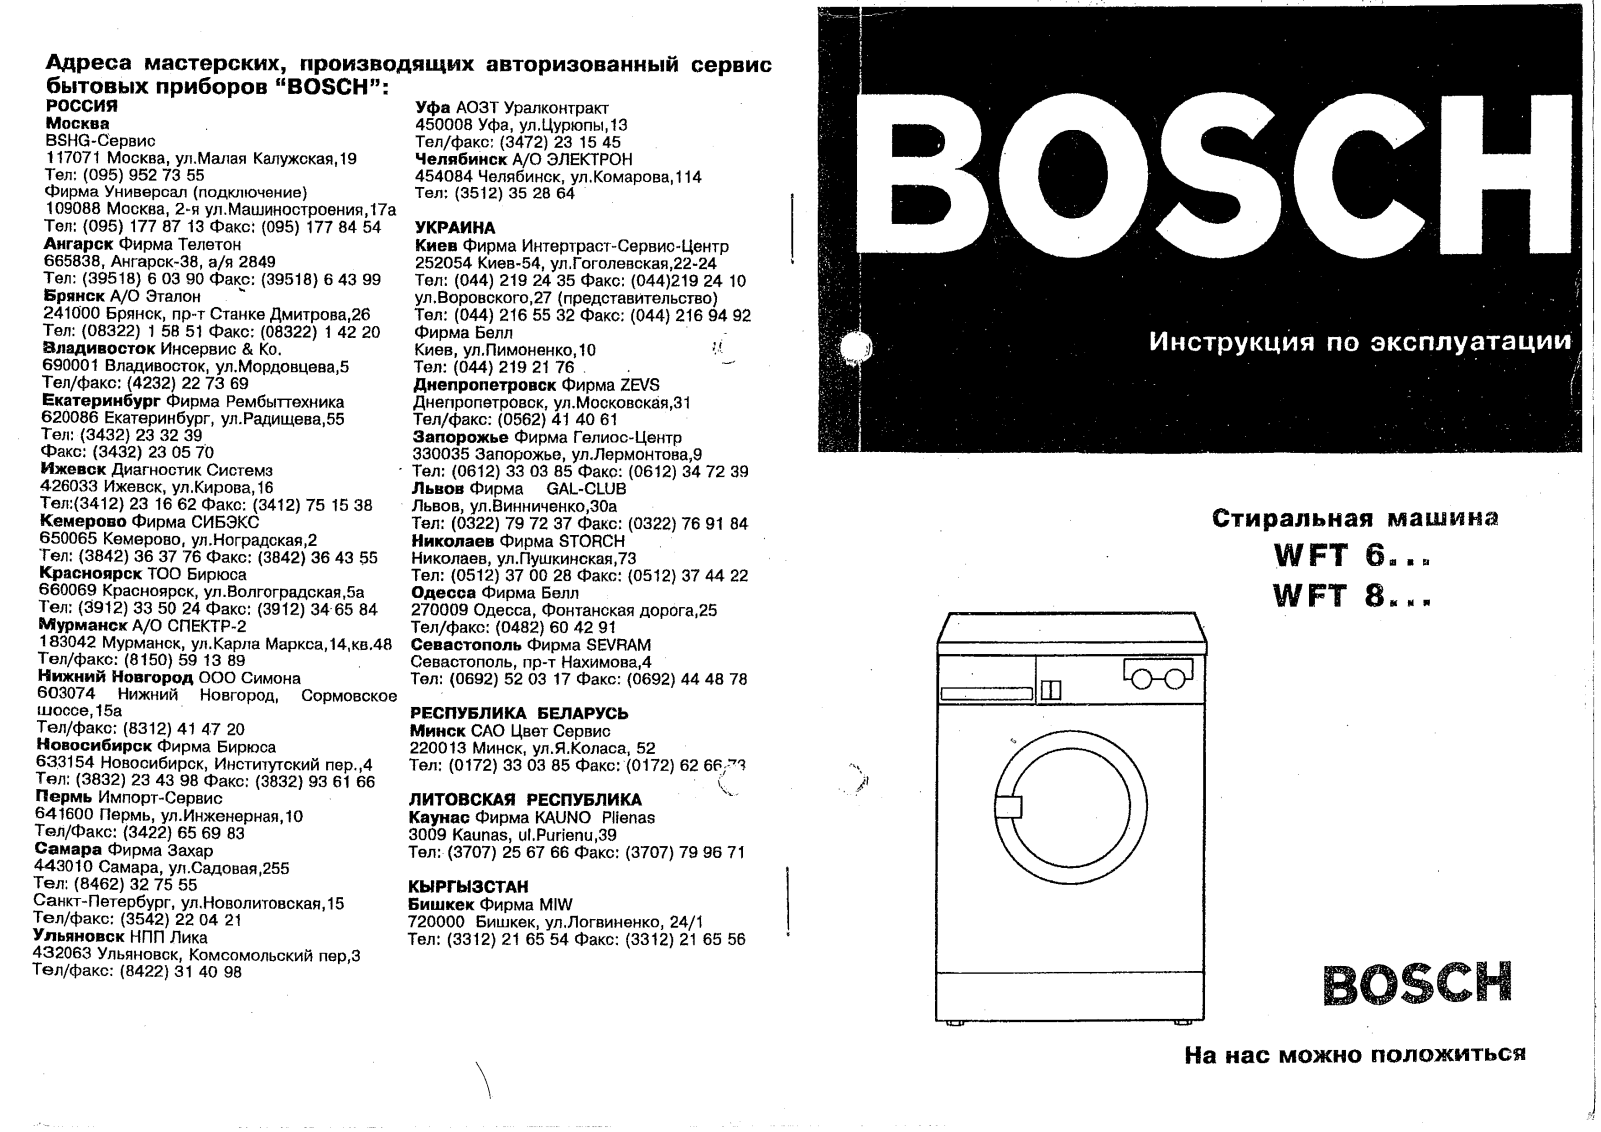 Bosch WFT 8330 User Manual